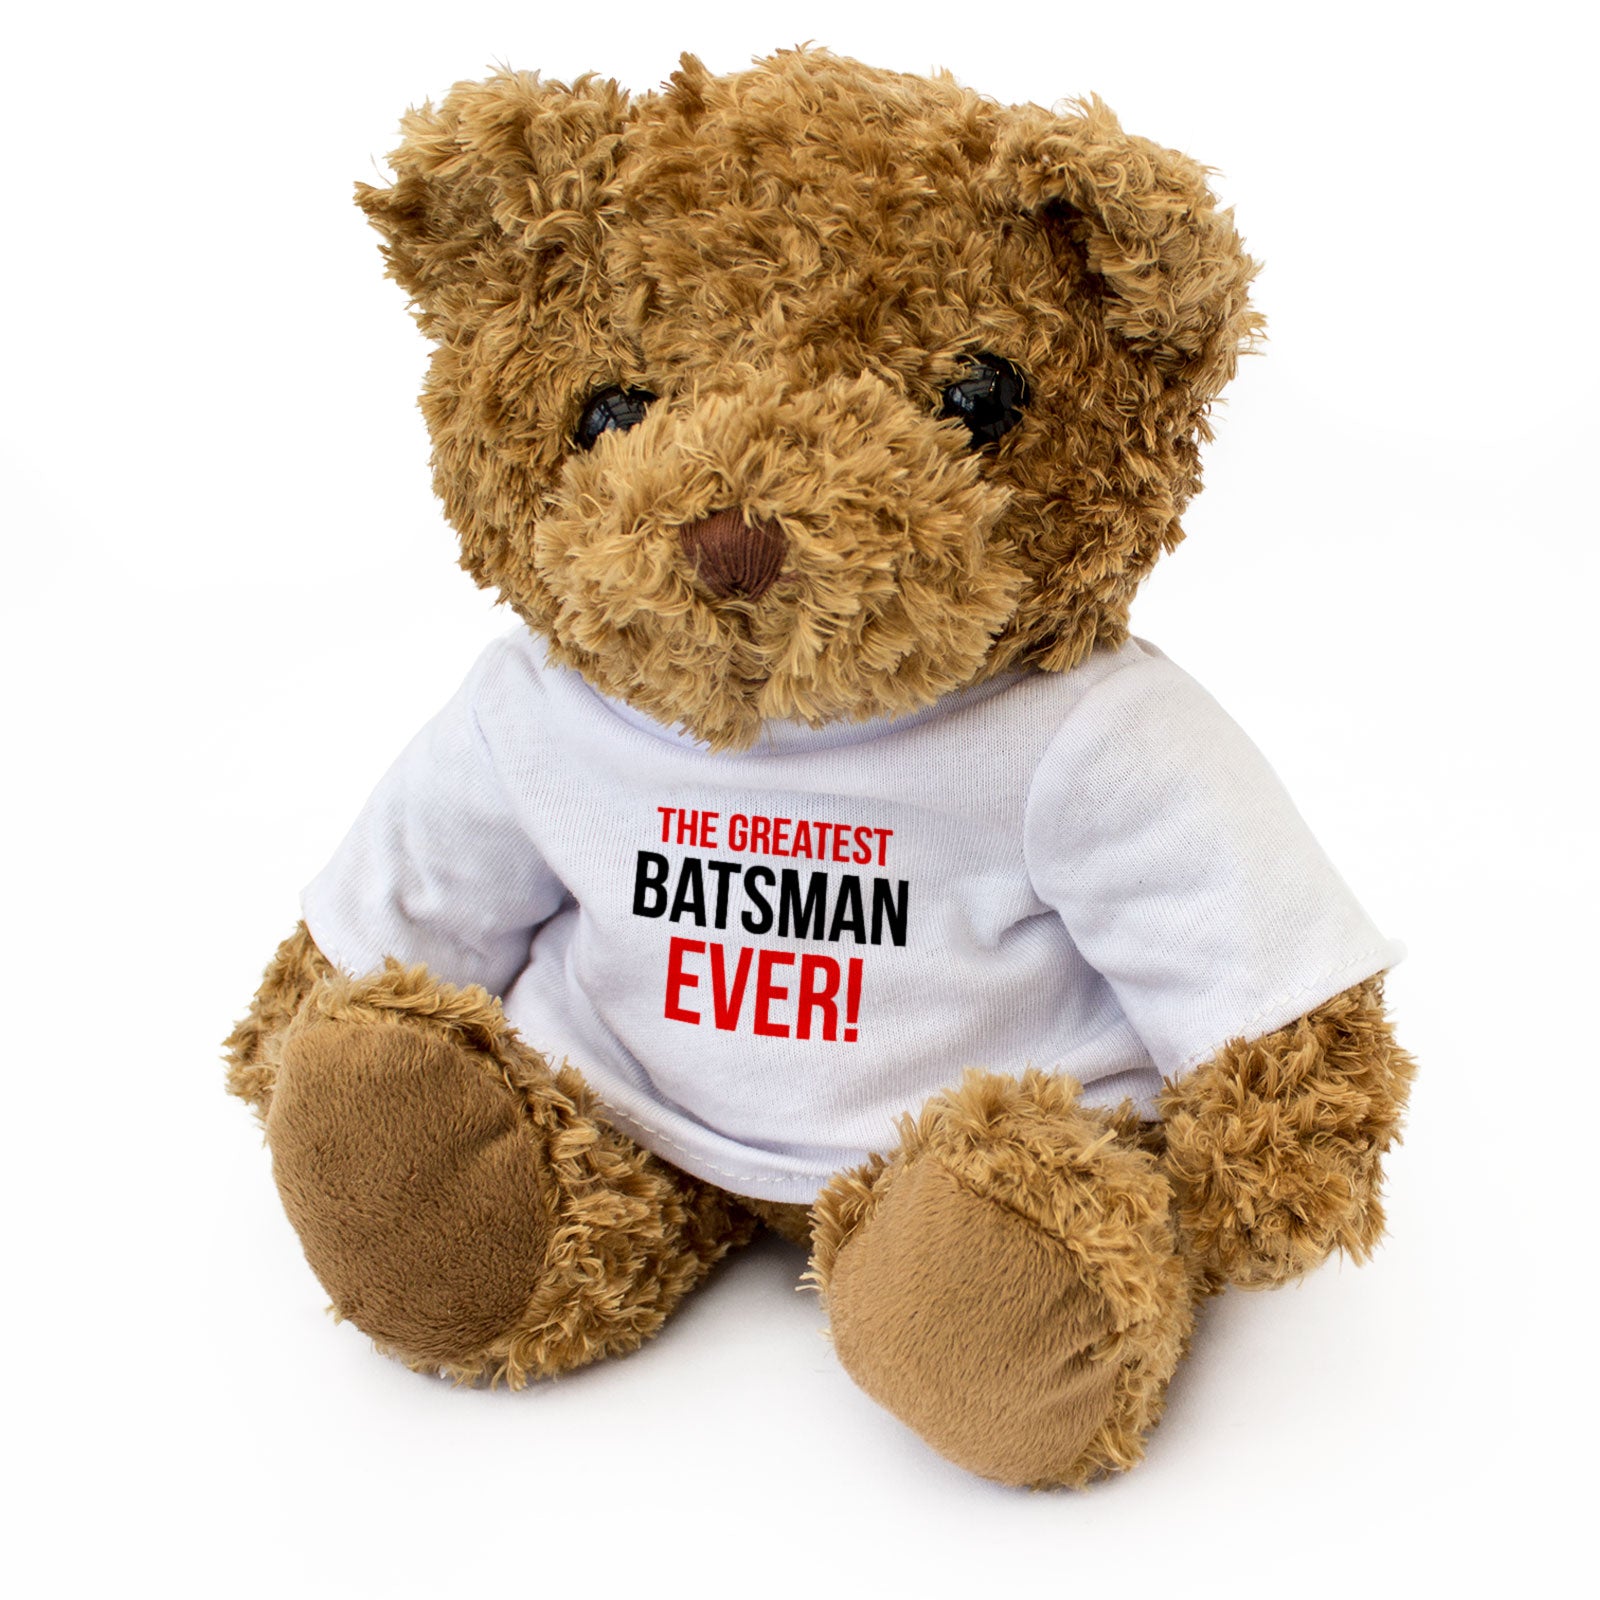 The Greatest Batsman Ever - Teddy Bear